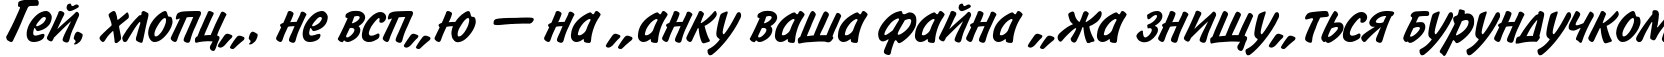 Пример написания шрифтом BrushType-SemiBold-Italic текста на украинском